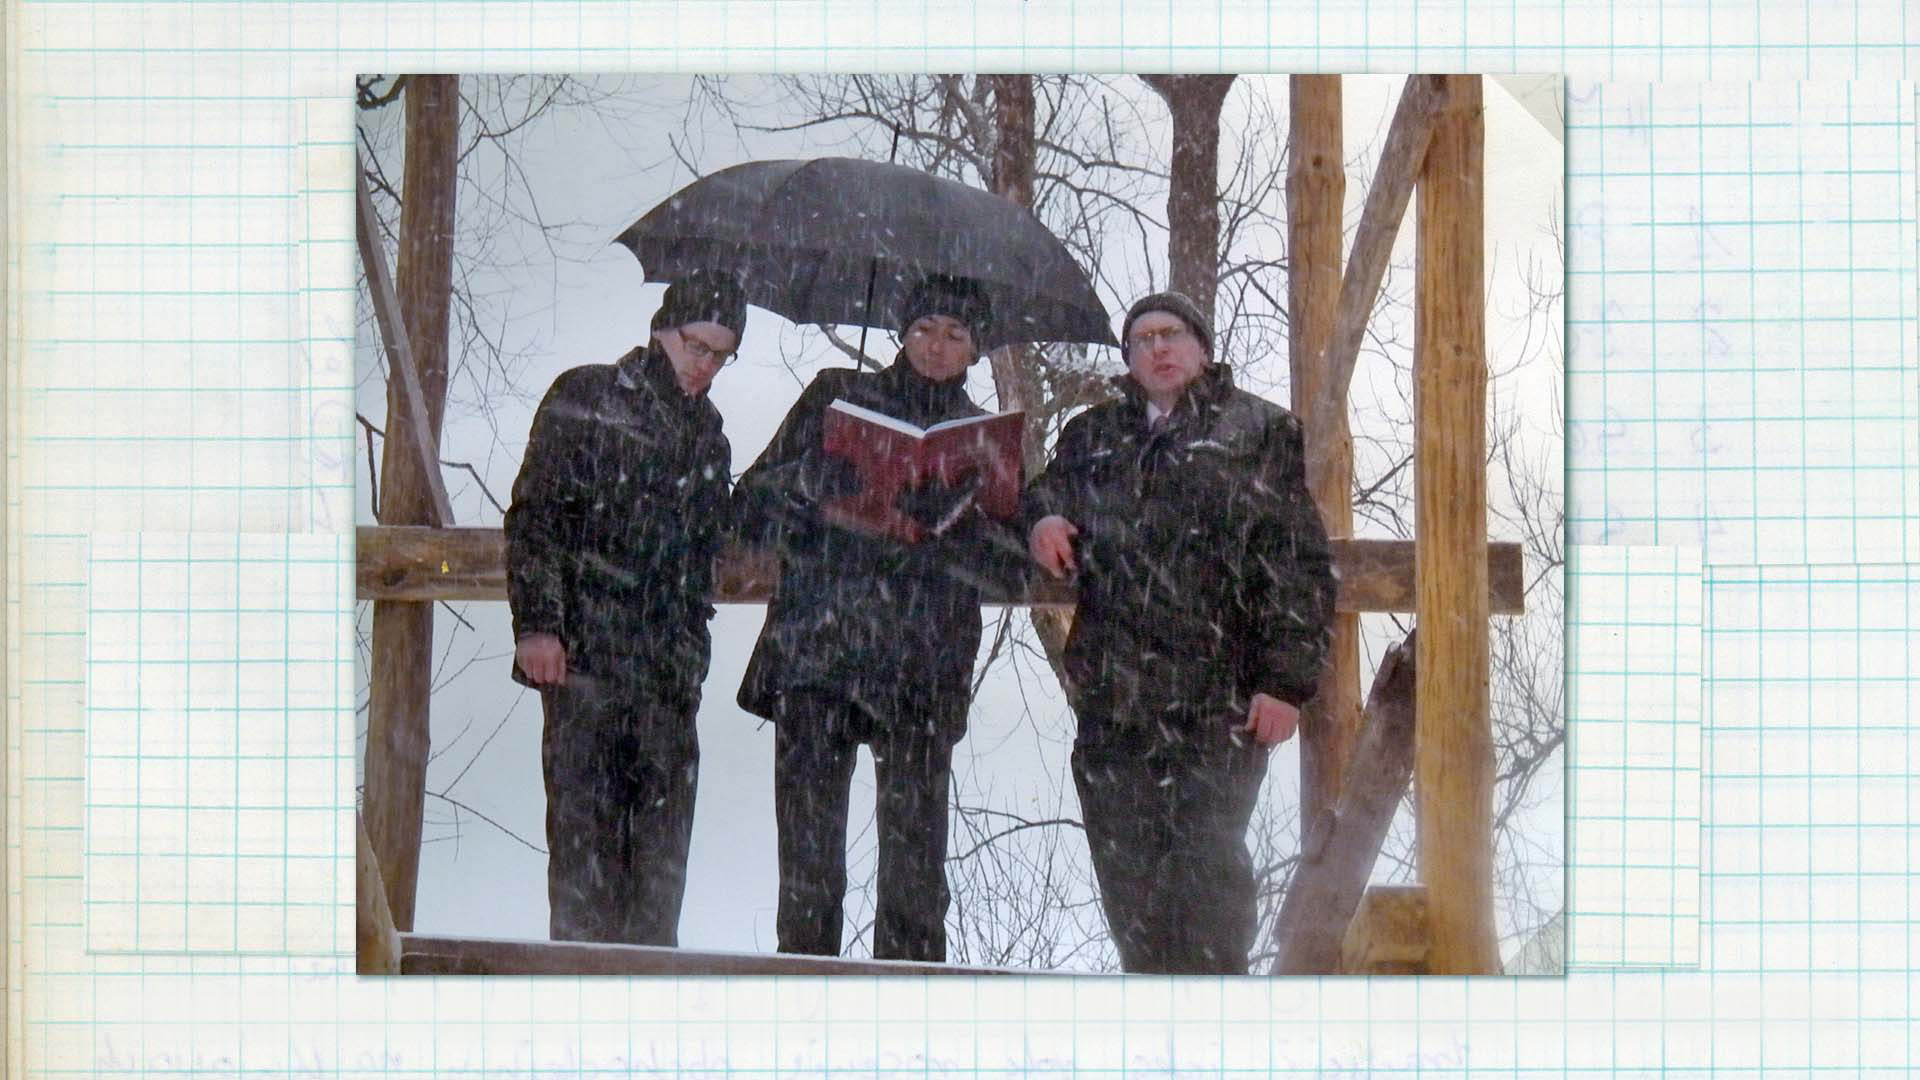 Wygłaszanie przywołówek, Niedziela Wielkanocna, 2013 Fotografia kolorowa. Trzech mężczyzn stoi na podeście drewnianej konstrukcji. Jeden z nich trzyma w swoich dłoniach księgę w czerwonej oprawie, drugi natomiast trzyma czarny parasol. Intensywnie pada obfity śnieg.